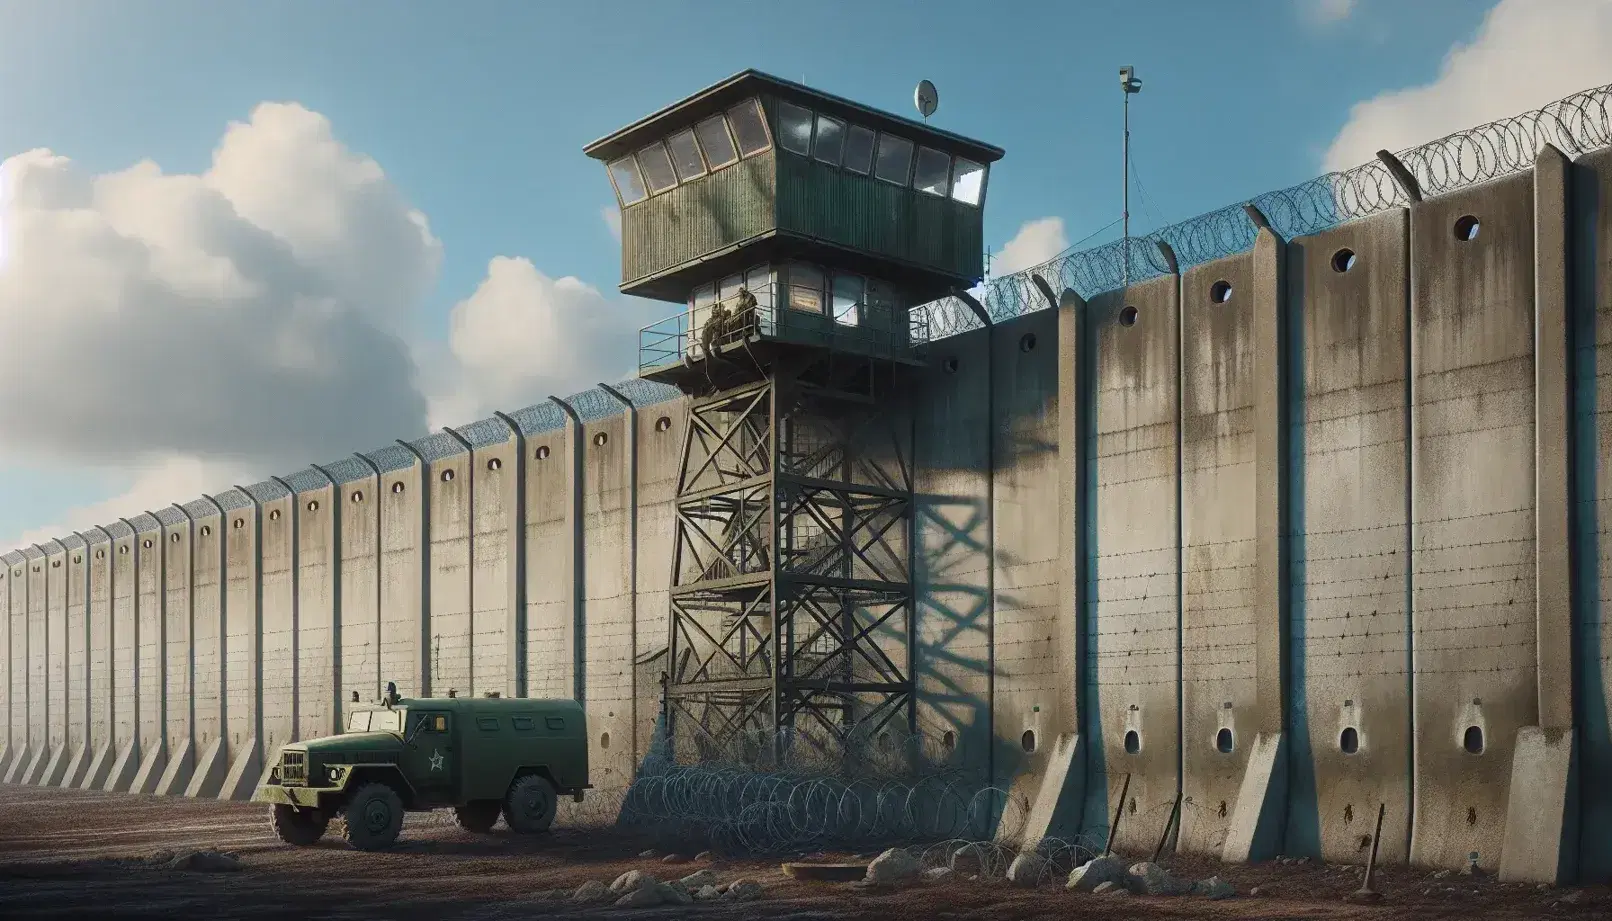 Torre de vigilancia militar con cabina y alambradas sobre muro de hormigón, vehículo militar parcialmente visible y cielo azul con nubes.